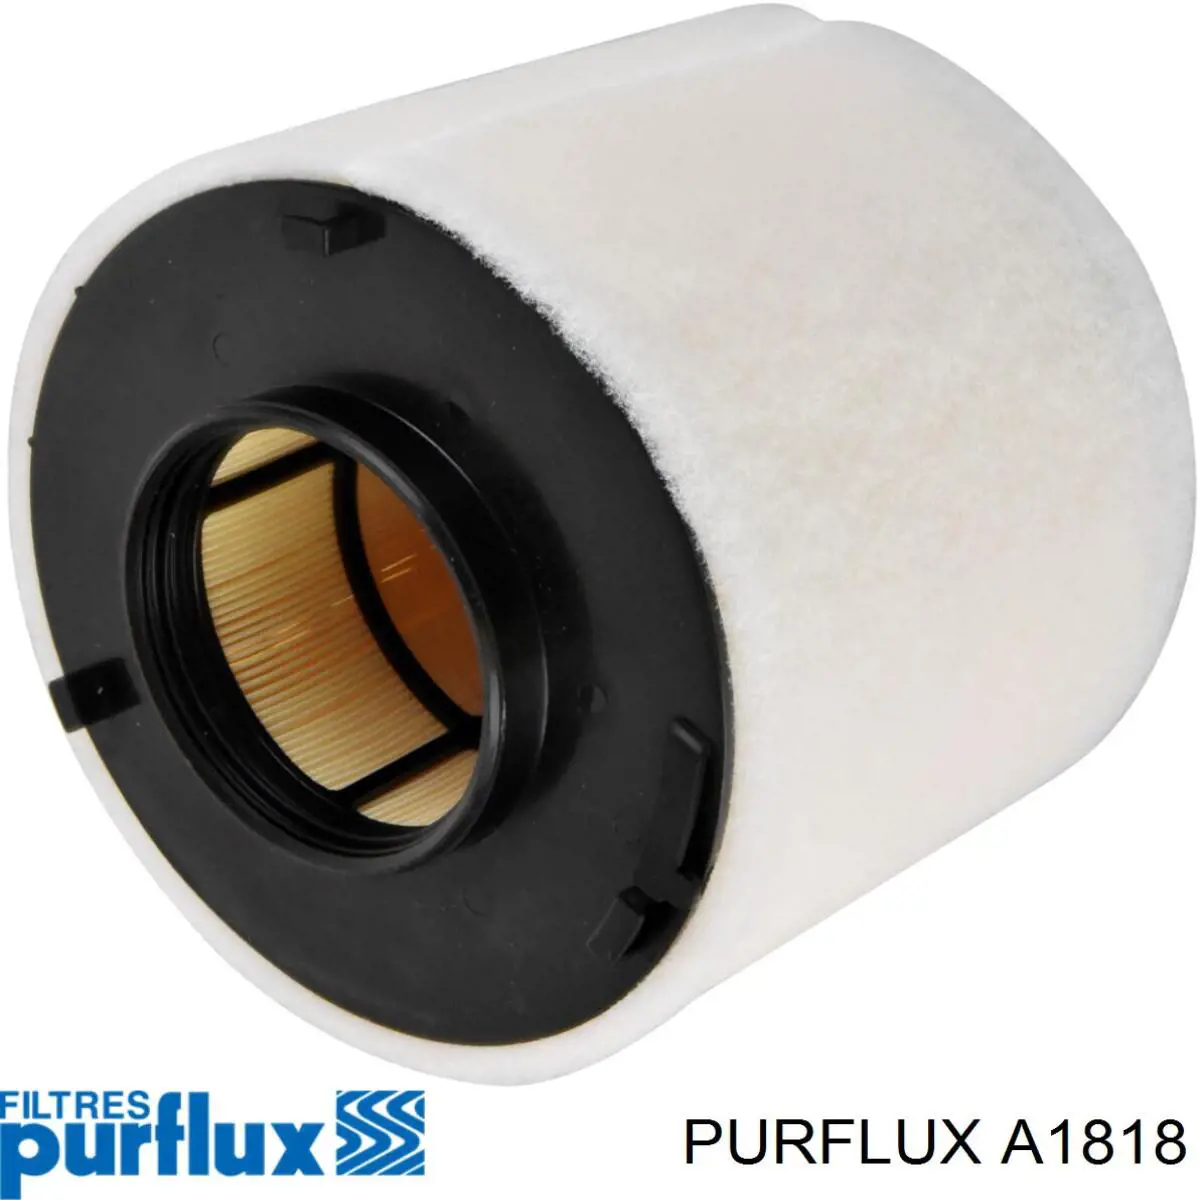 A1818 Purflux filtro de ar